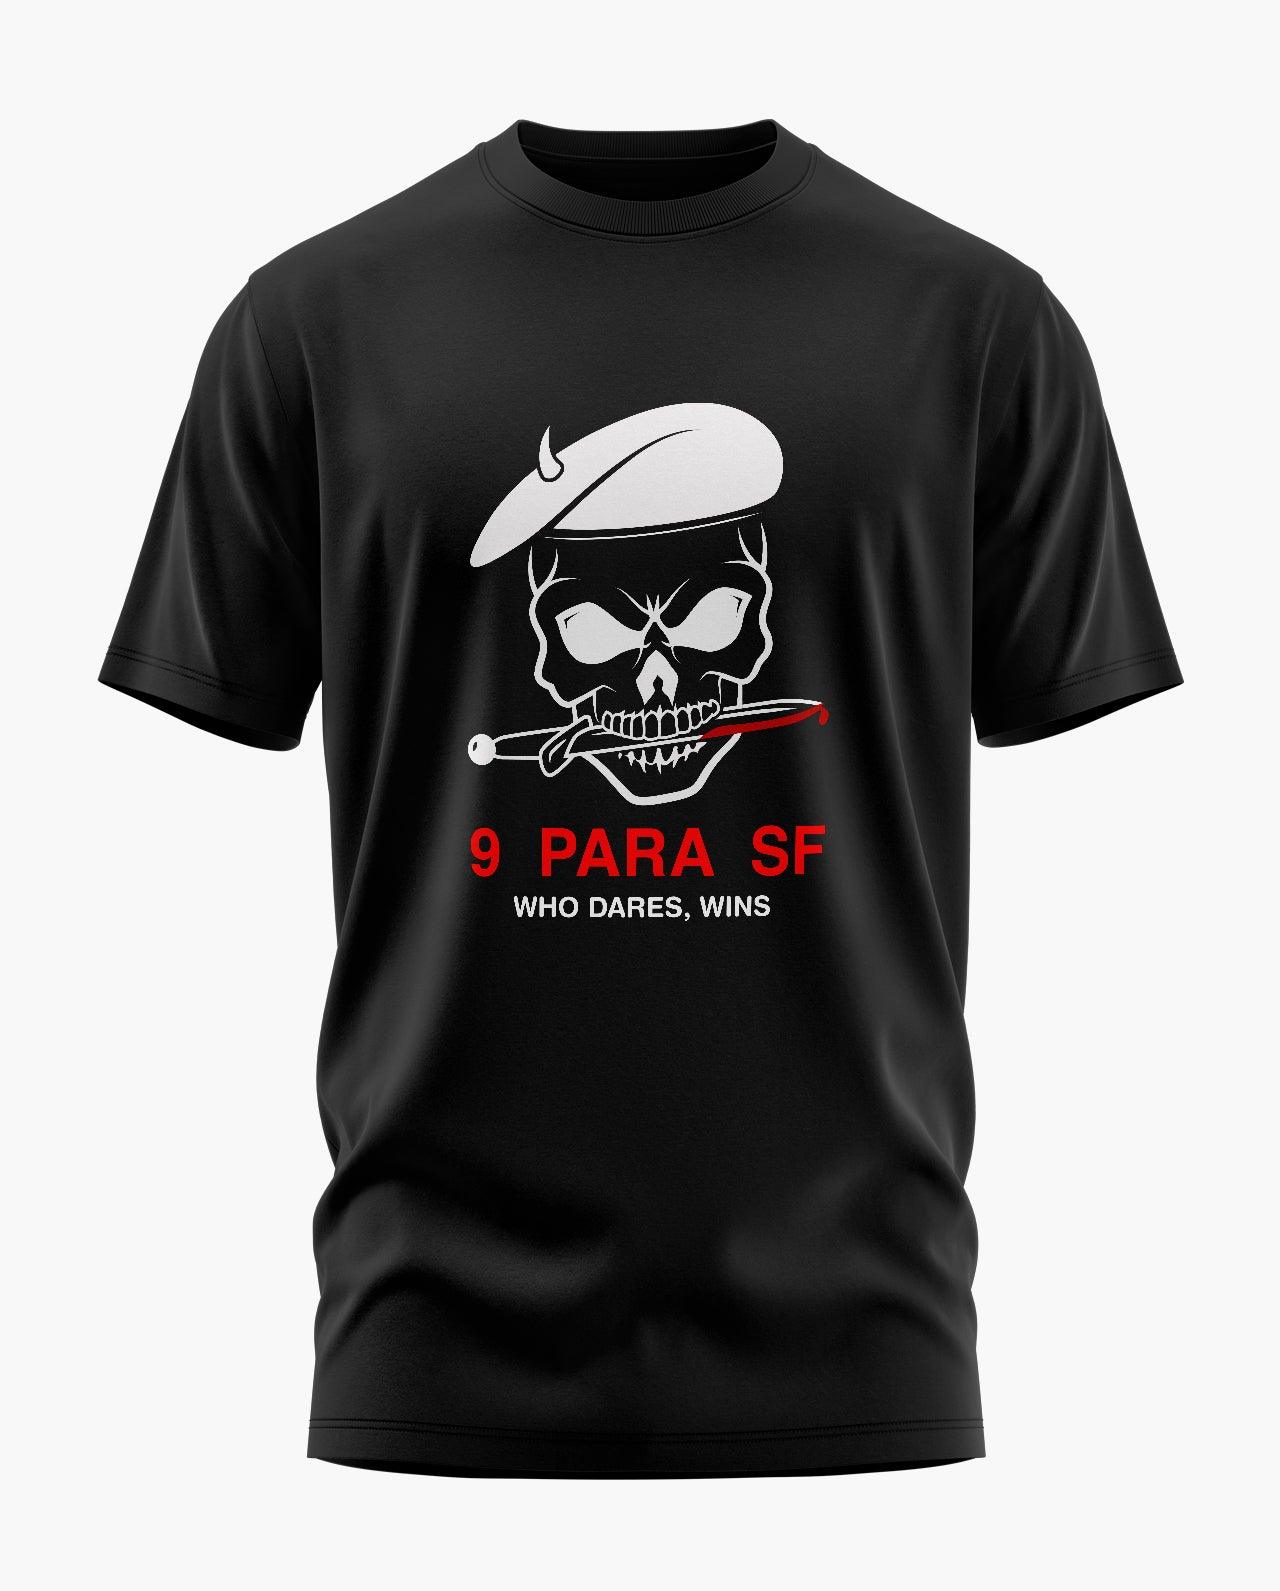 9 PARA SF Aero Armour T-Shirt exclusive at Aero Armour